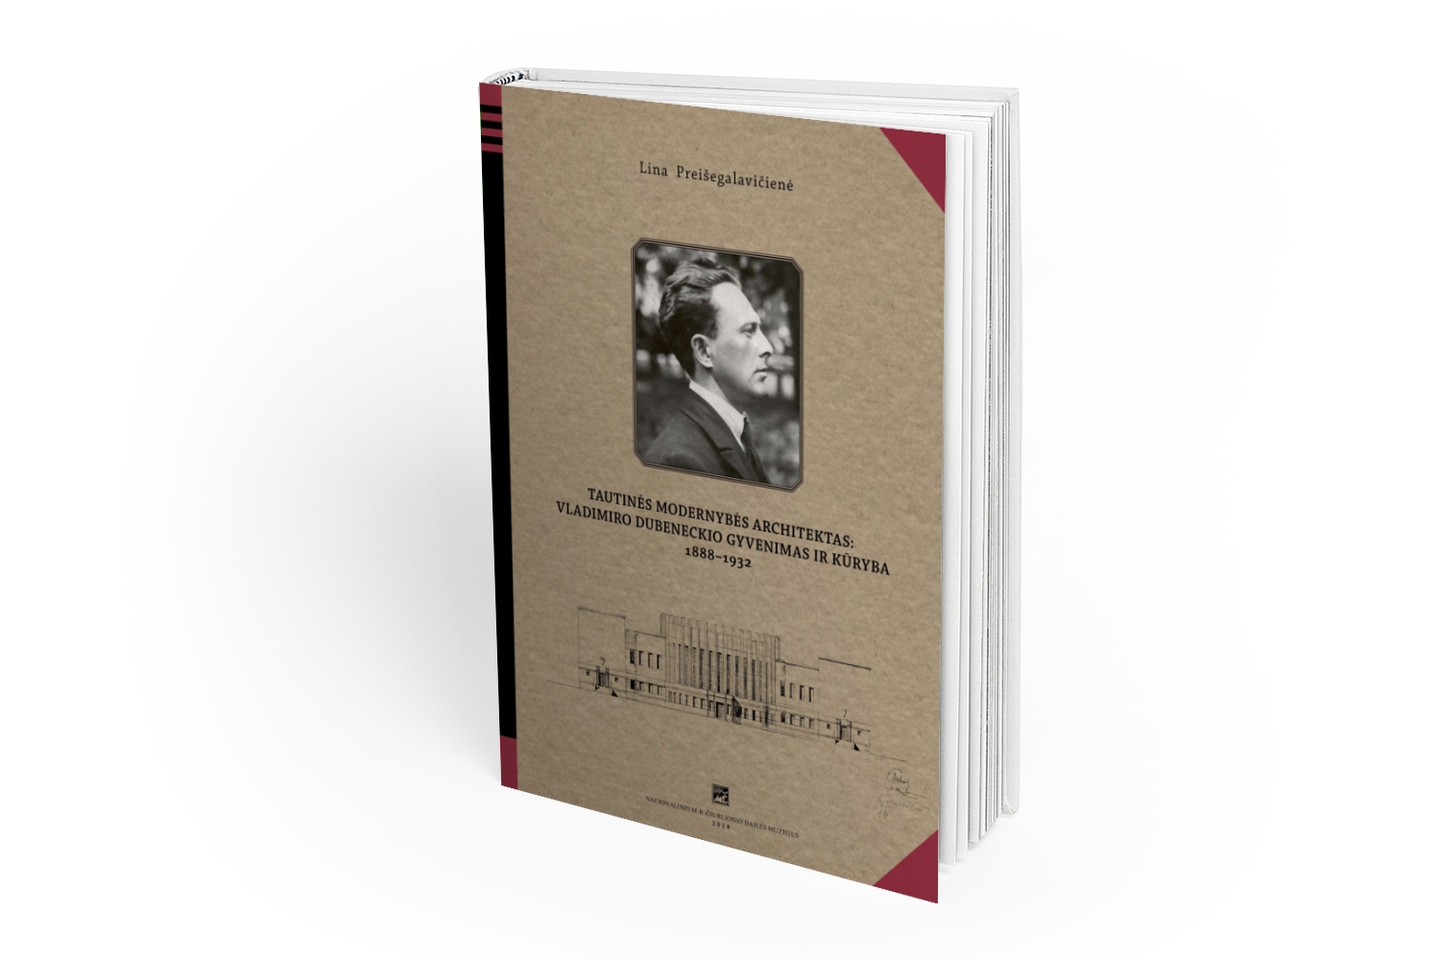 L.Preišegalavičienės knyga apie V.Dubeneckį skirta menotyrininkams, kultūrologams, architektams, dailės studijų studentams ir plačiajai visuomenei, besidominčiai nepriklausomos Lietuvos nacionaline kultūra.